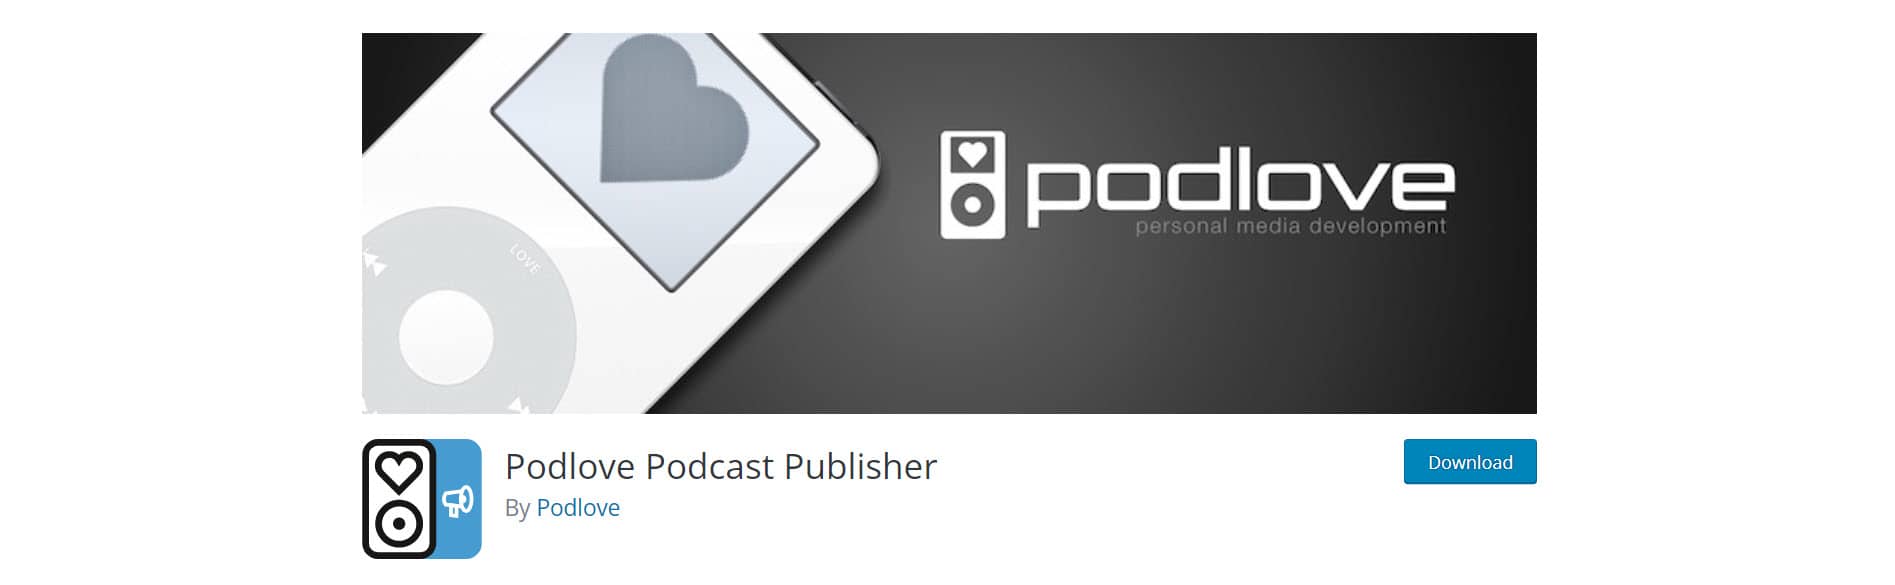 podlove - best wordpress podcast plugins